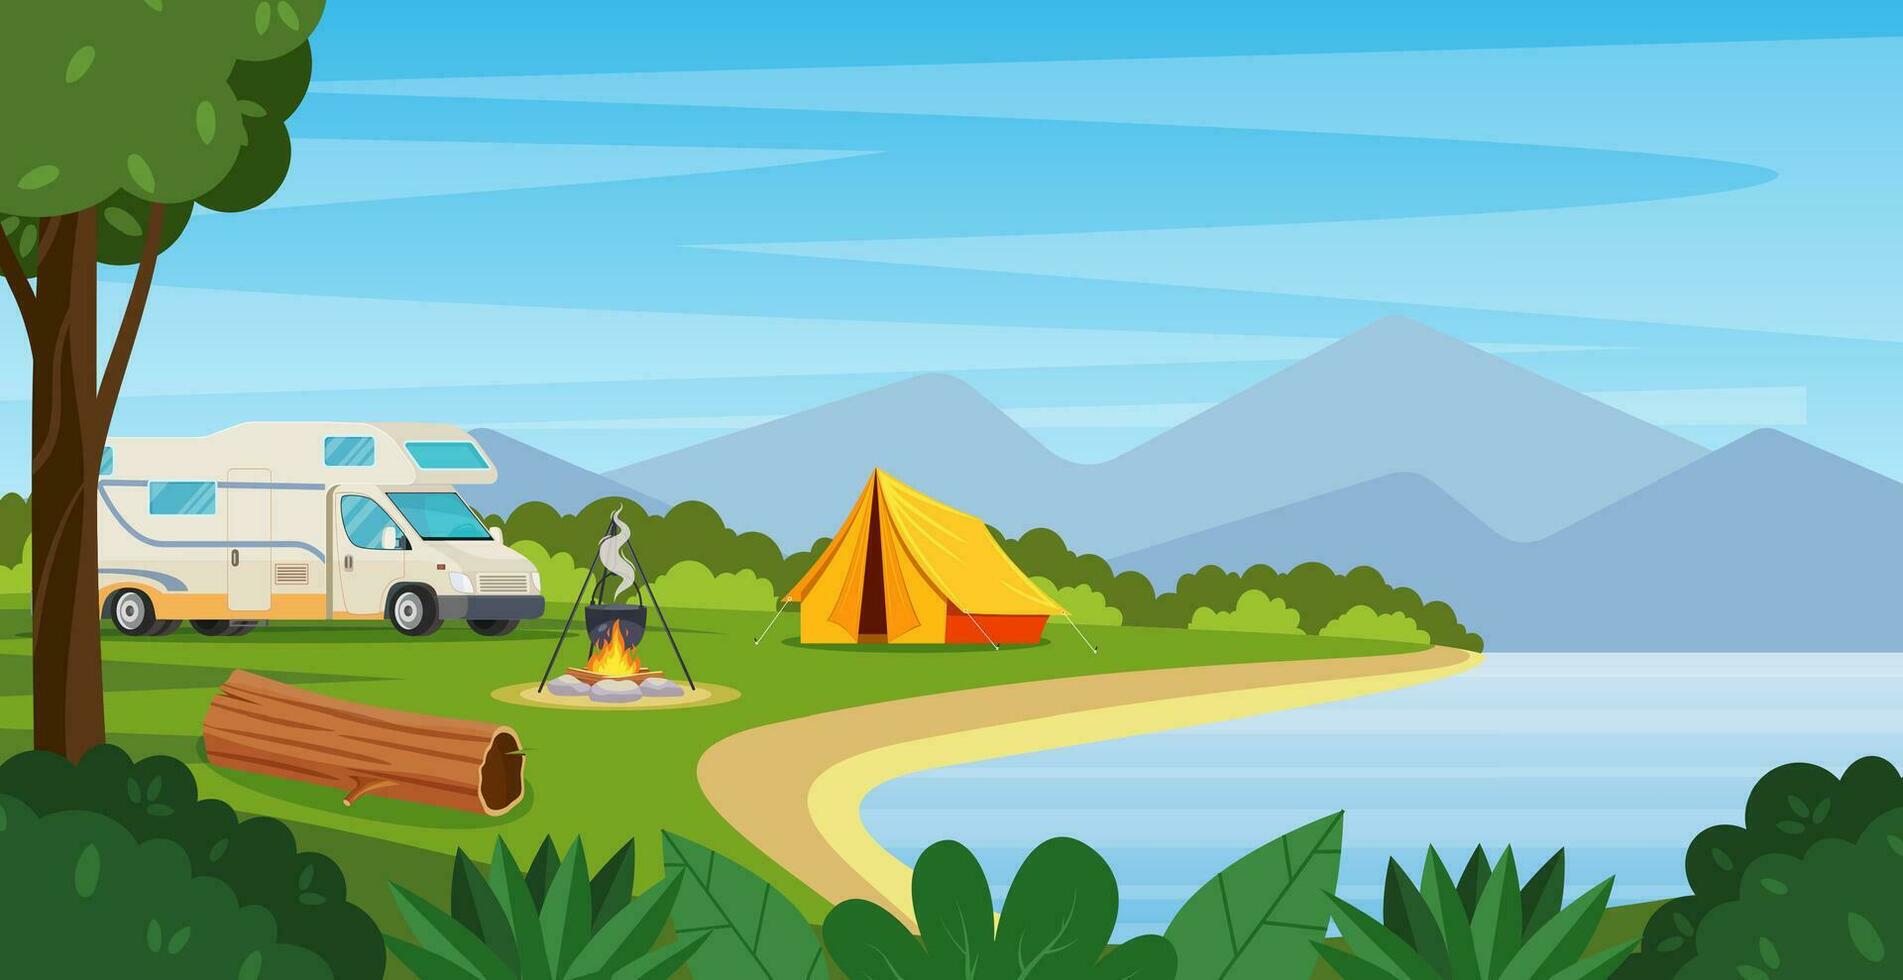 Sommer- Lager mit Lagerfeuer, Zelt, Lieferwagen. Karikatur Landschaft mit Berg, Wald und Campingplatz. Ausrüstung zum reisen, wandern. Vektor Illustration im eben Stil